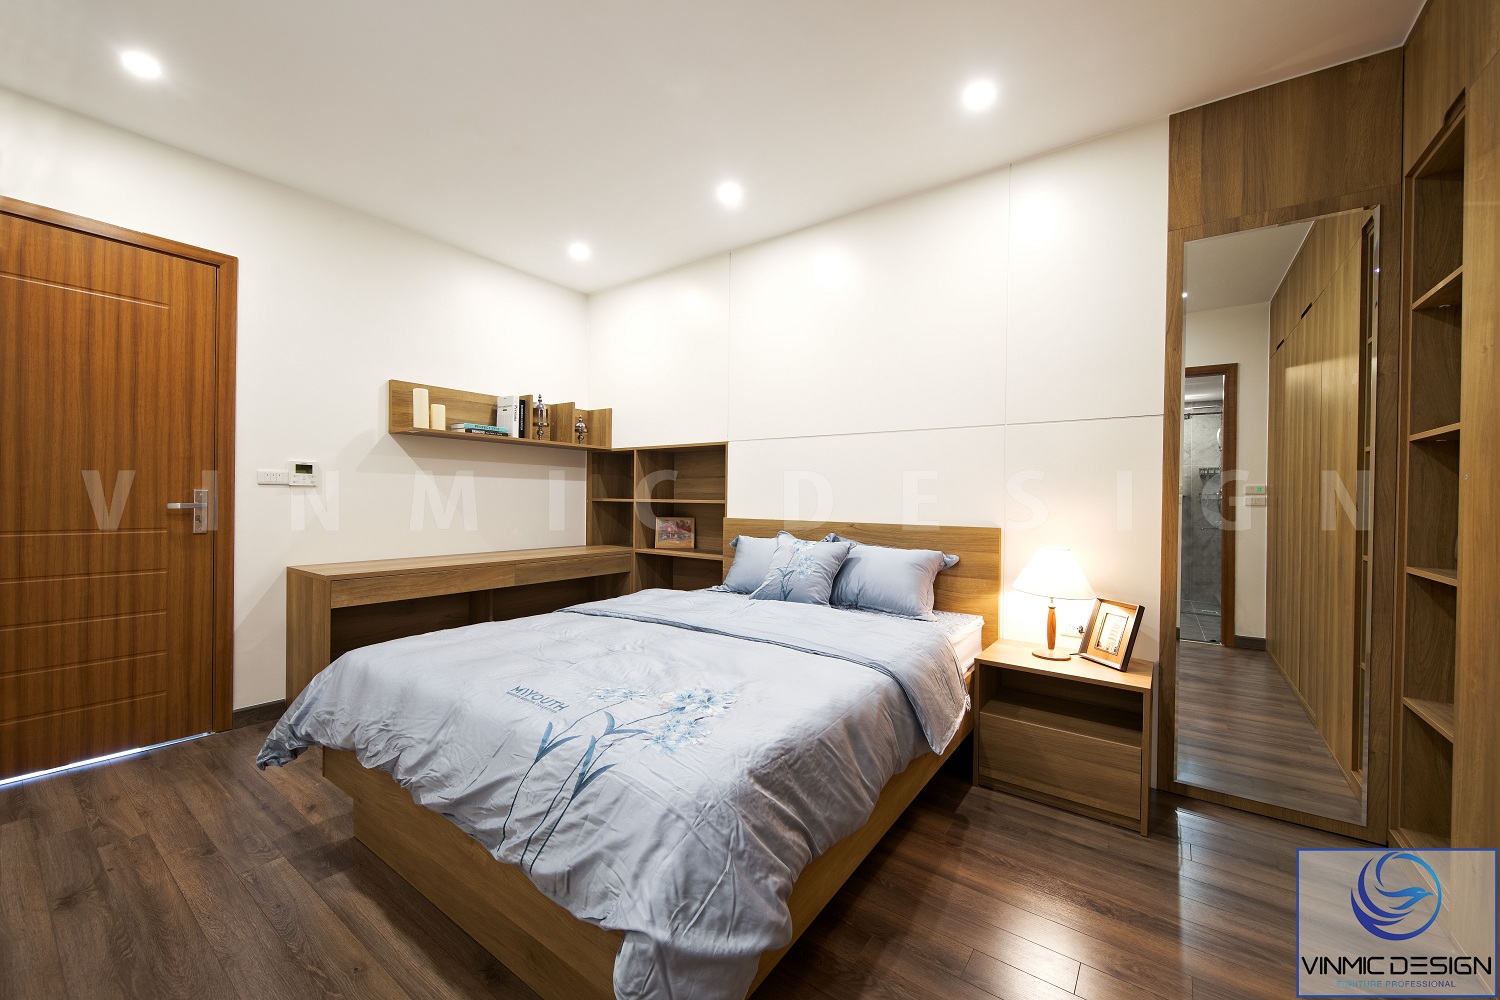 Giường ngủ được thi công với chất liệu gỗ MDF lõi xanh chống ẩm